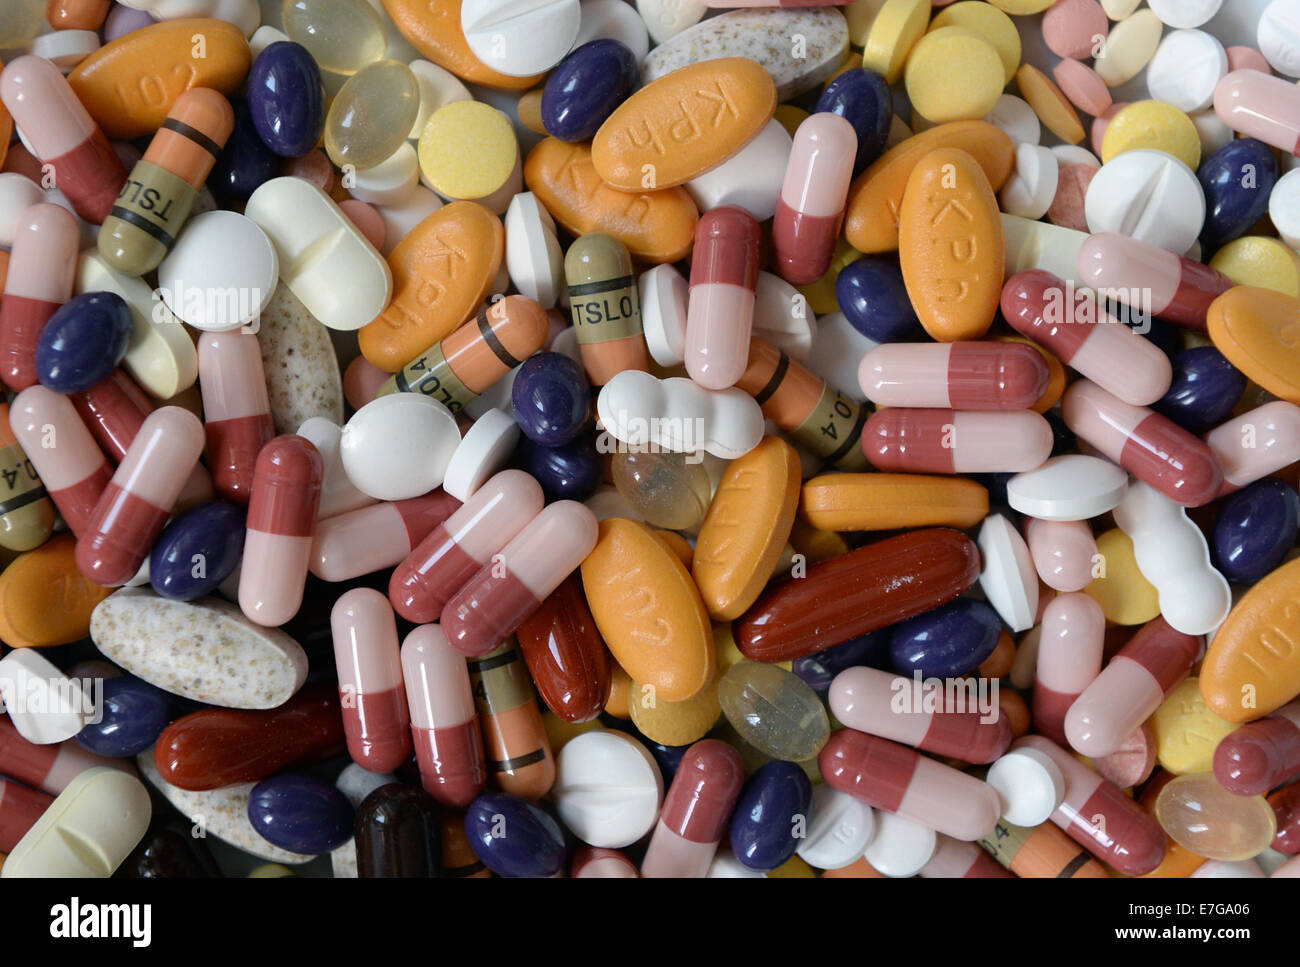 Tabletten und Pillen auf einem Tisch, 23. Juli 2014 in Hamburg. Stockfoto